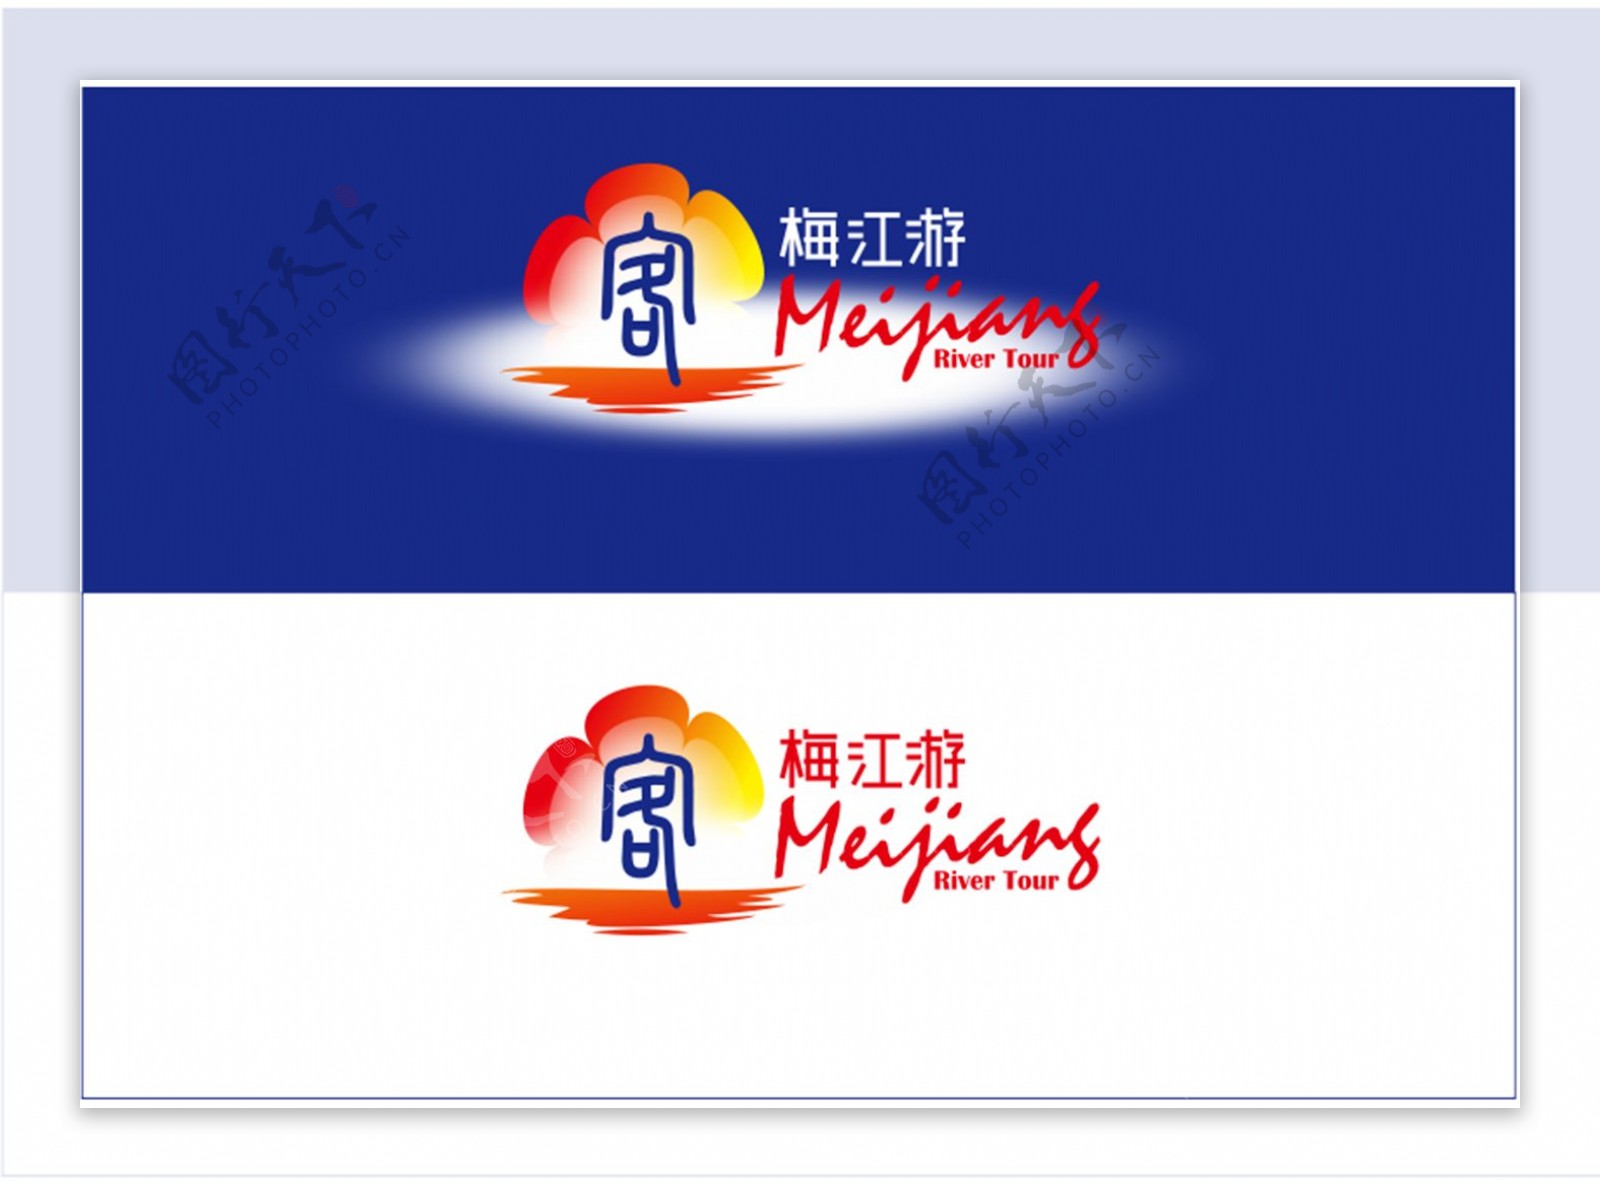 梅江游梅州客通logo